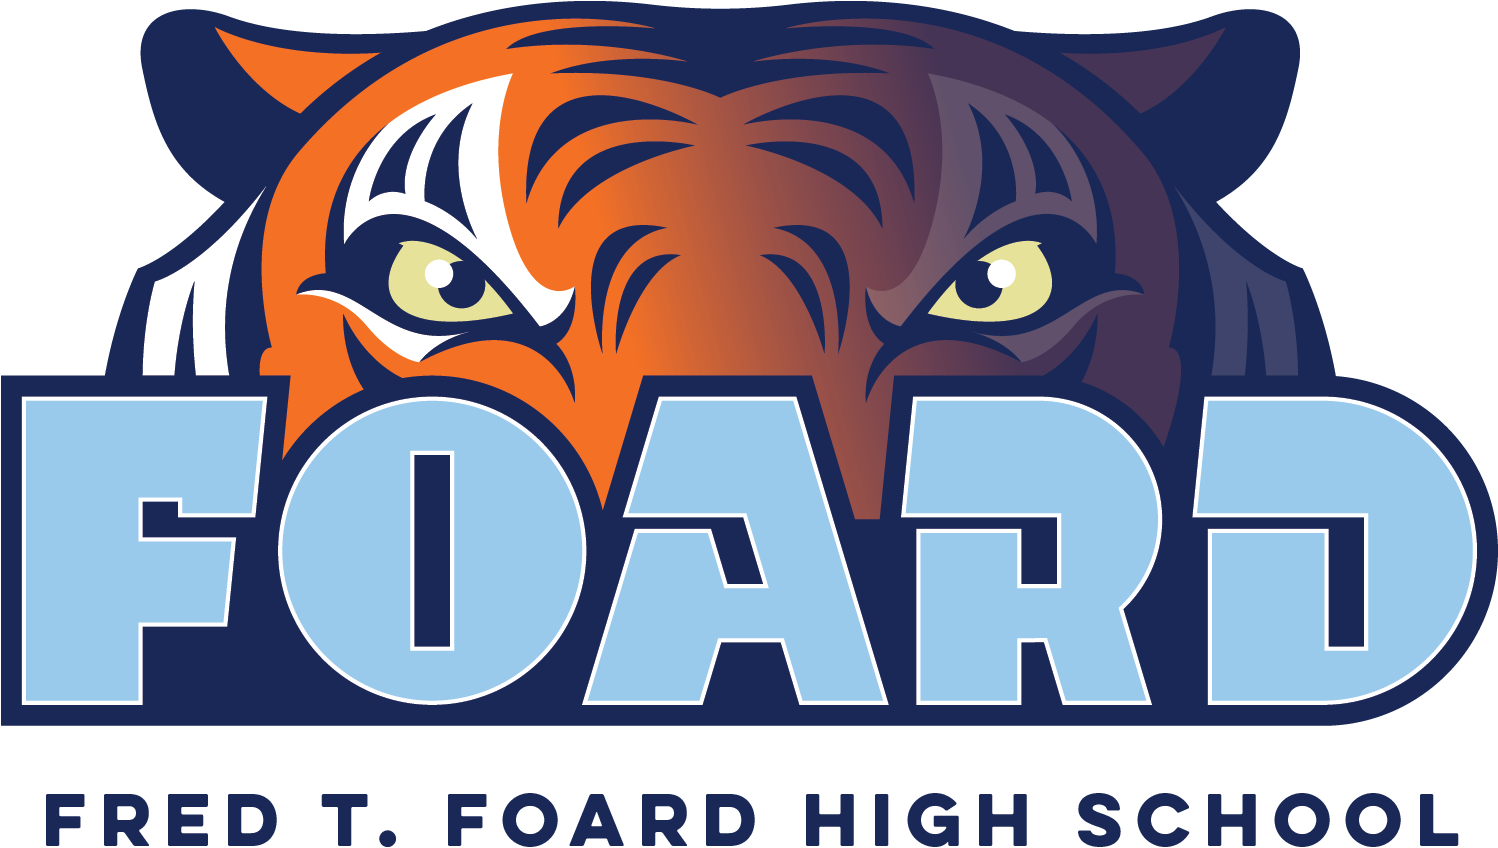 Fred T - Foard - Fred T Foard High School (1497x866)